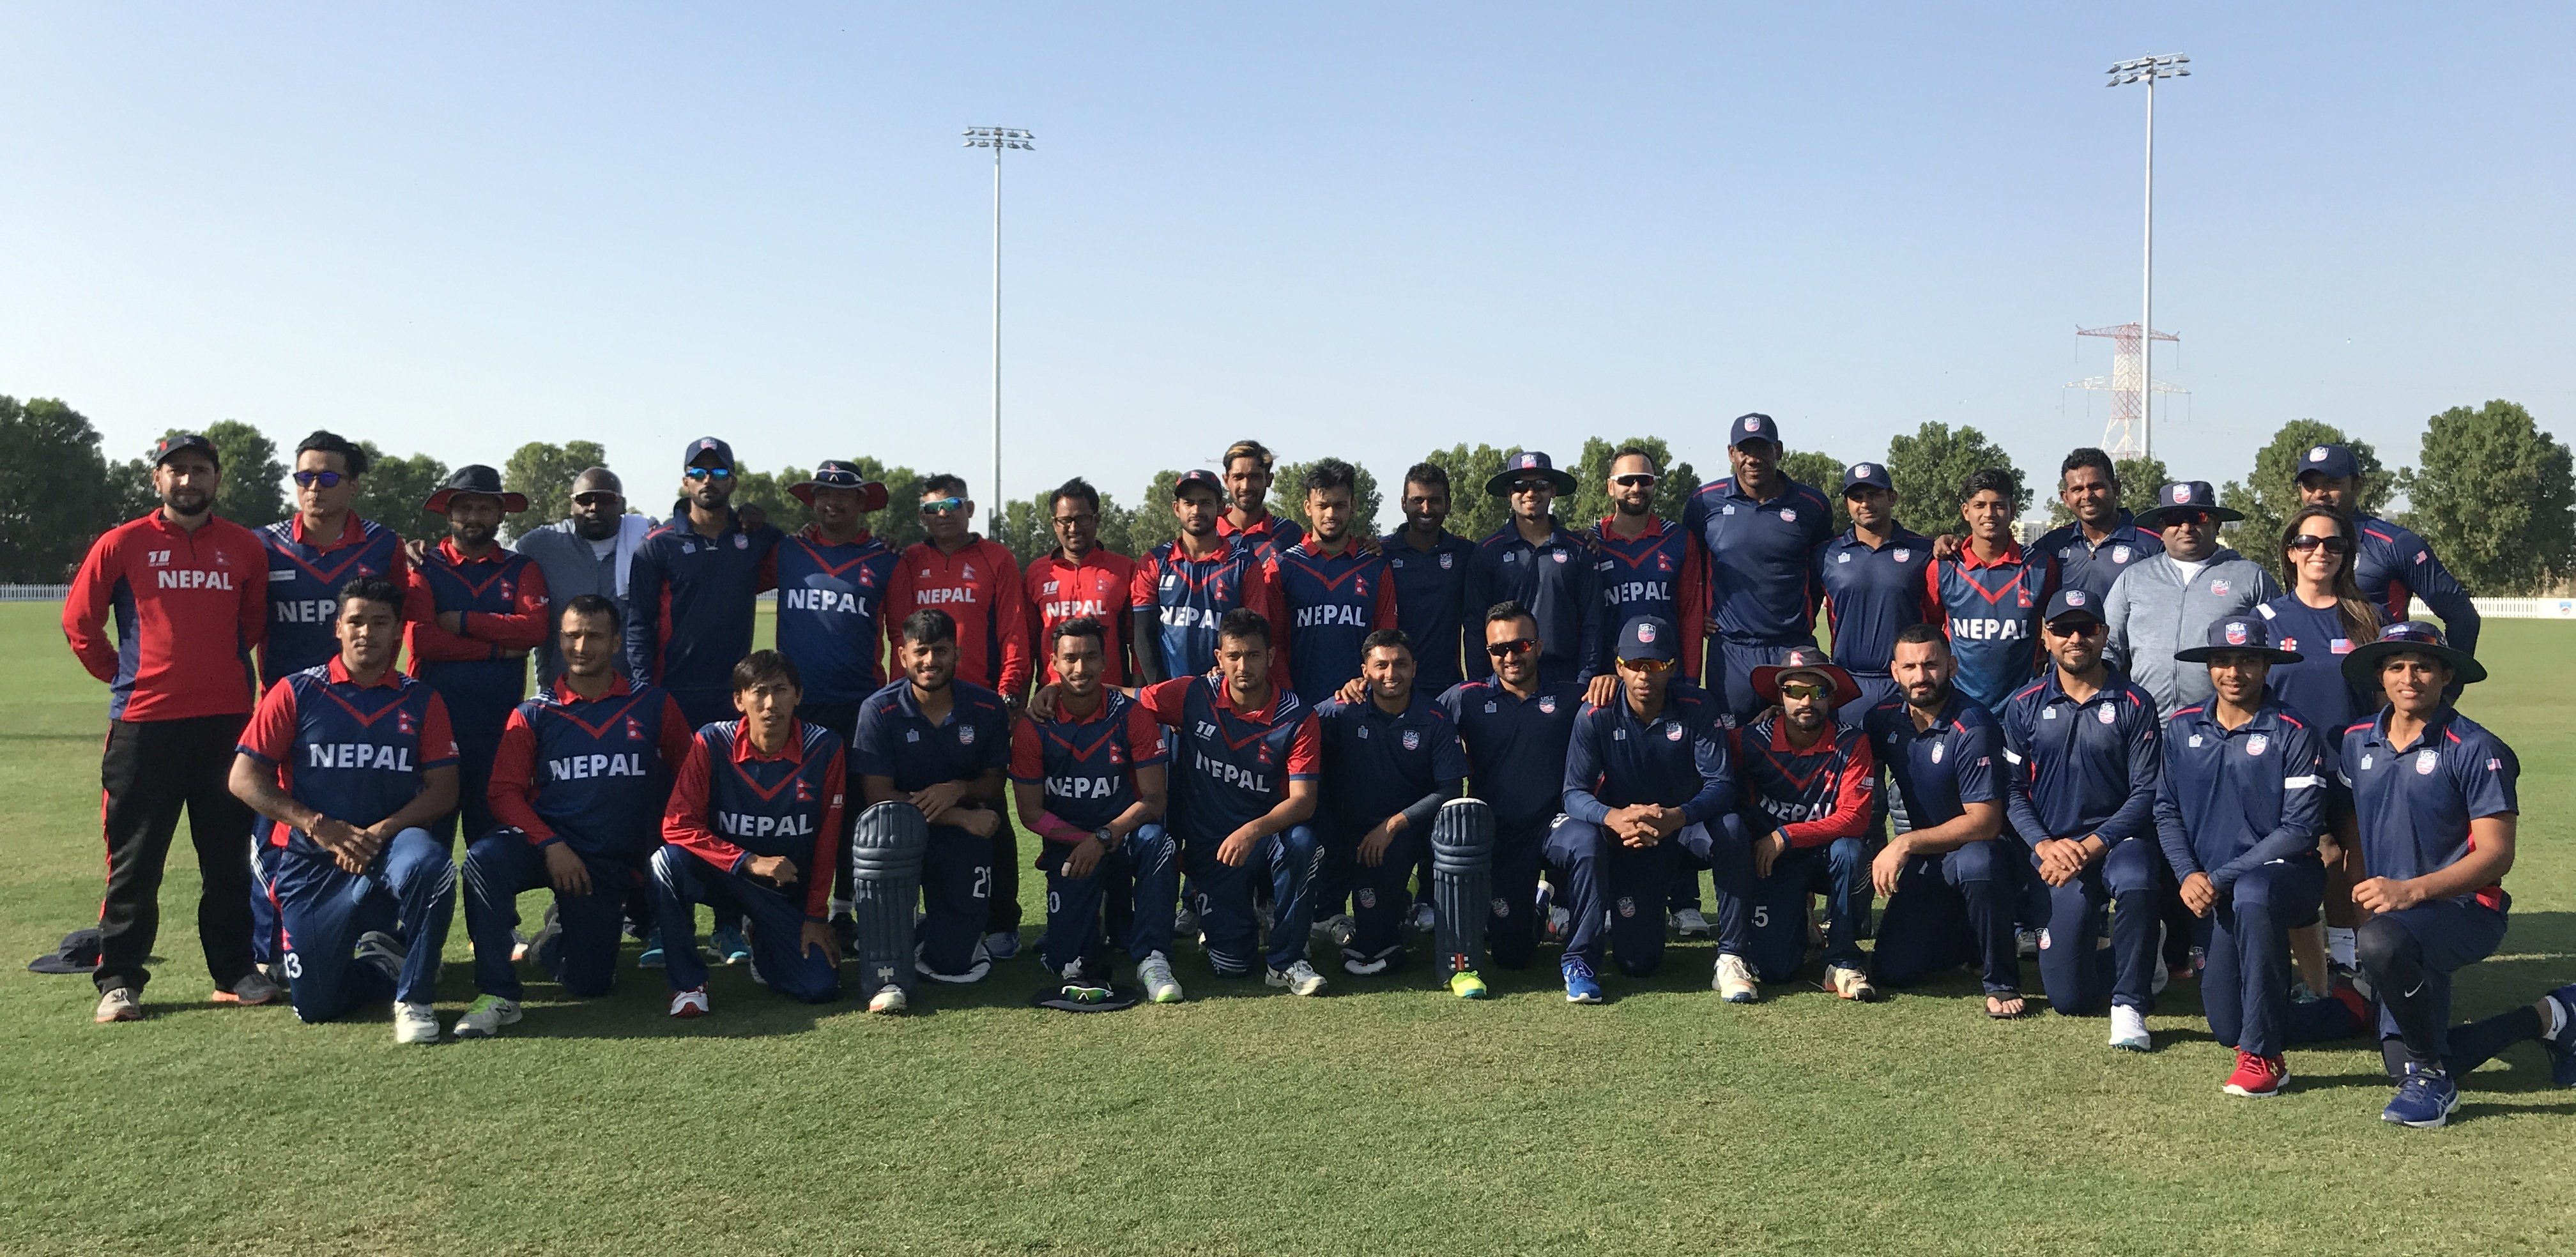 USA Score 5 wicket win over Nepal in Abu Dhabi